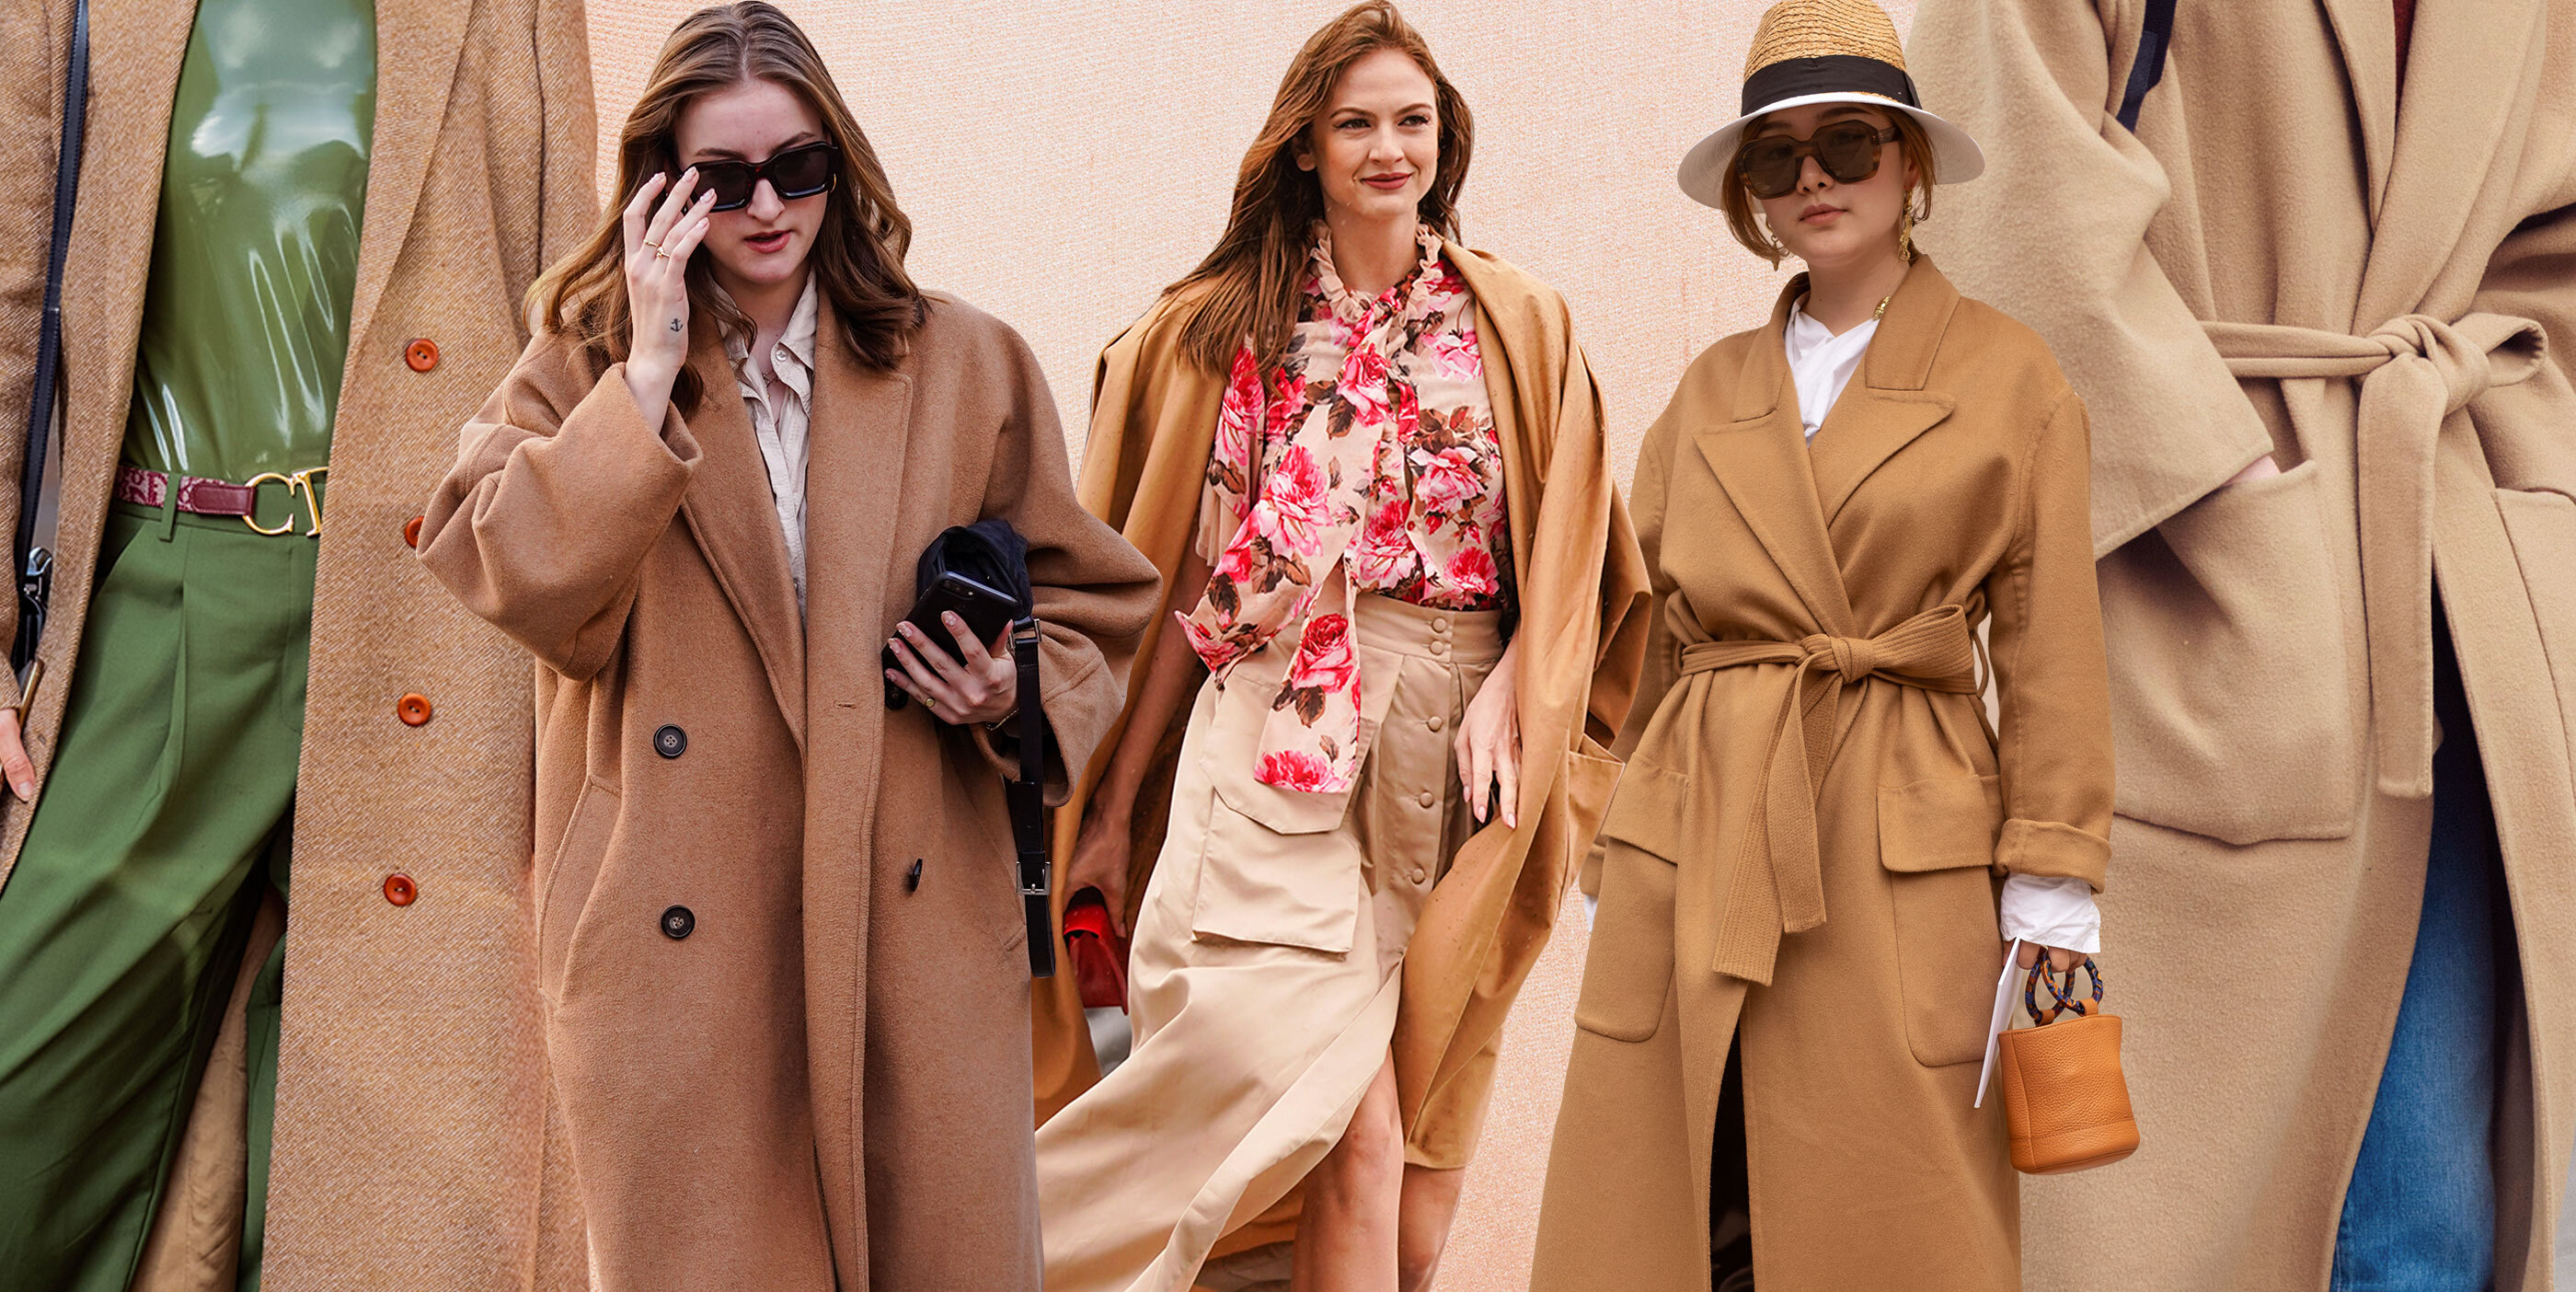 Un abrigo camel, 7 looks: así se combina la prenda todoterreno del invierno  | Shopping | S Moda EL PAÍS